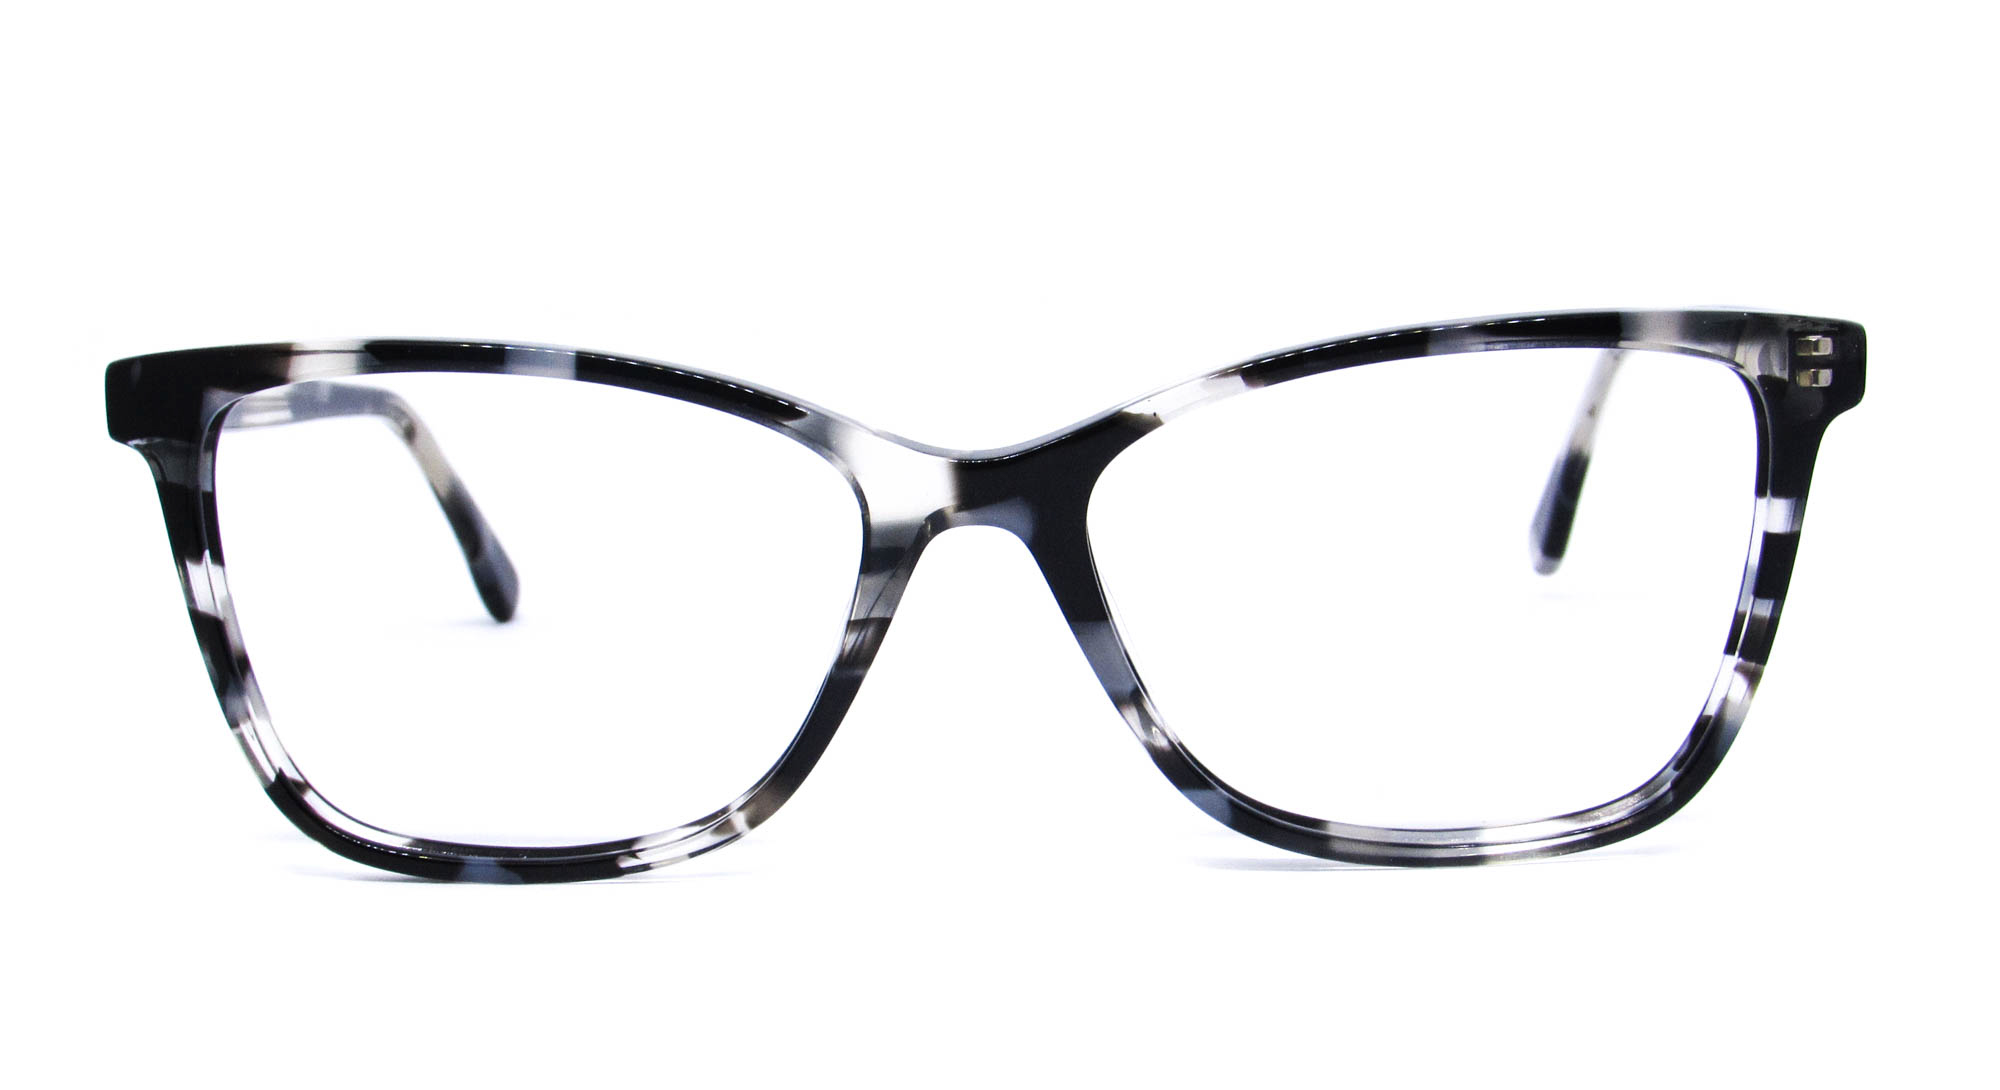 Óculos de Grau Feminino Gatinho Mesclado com Preto